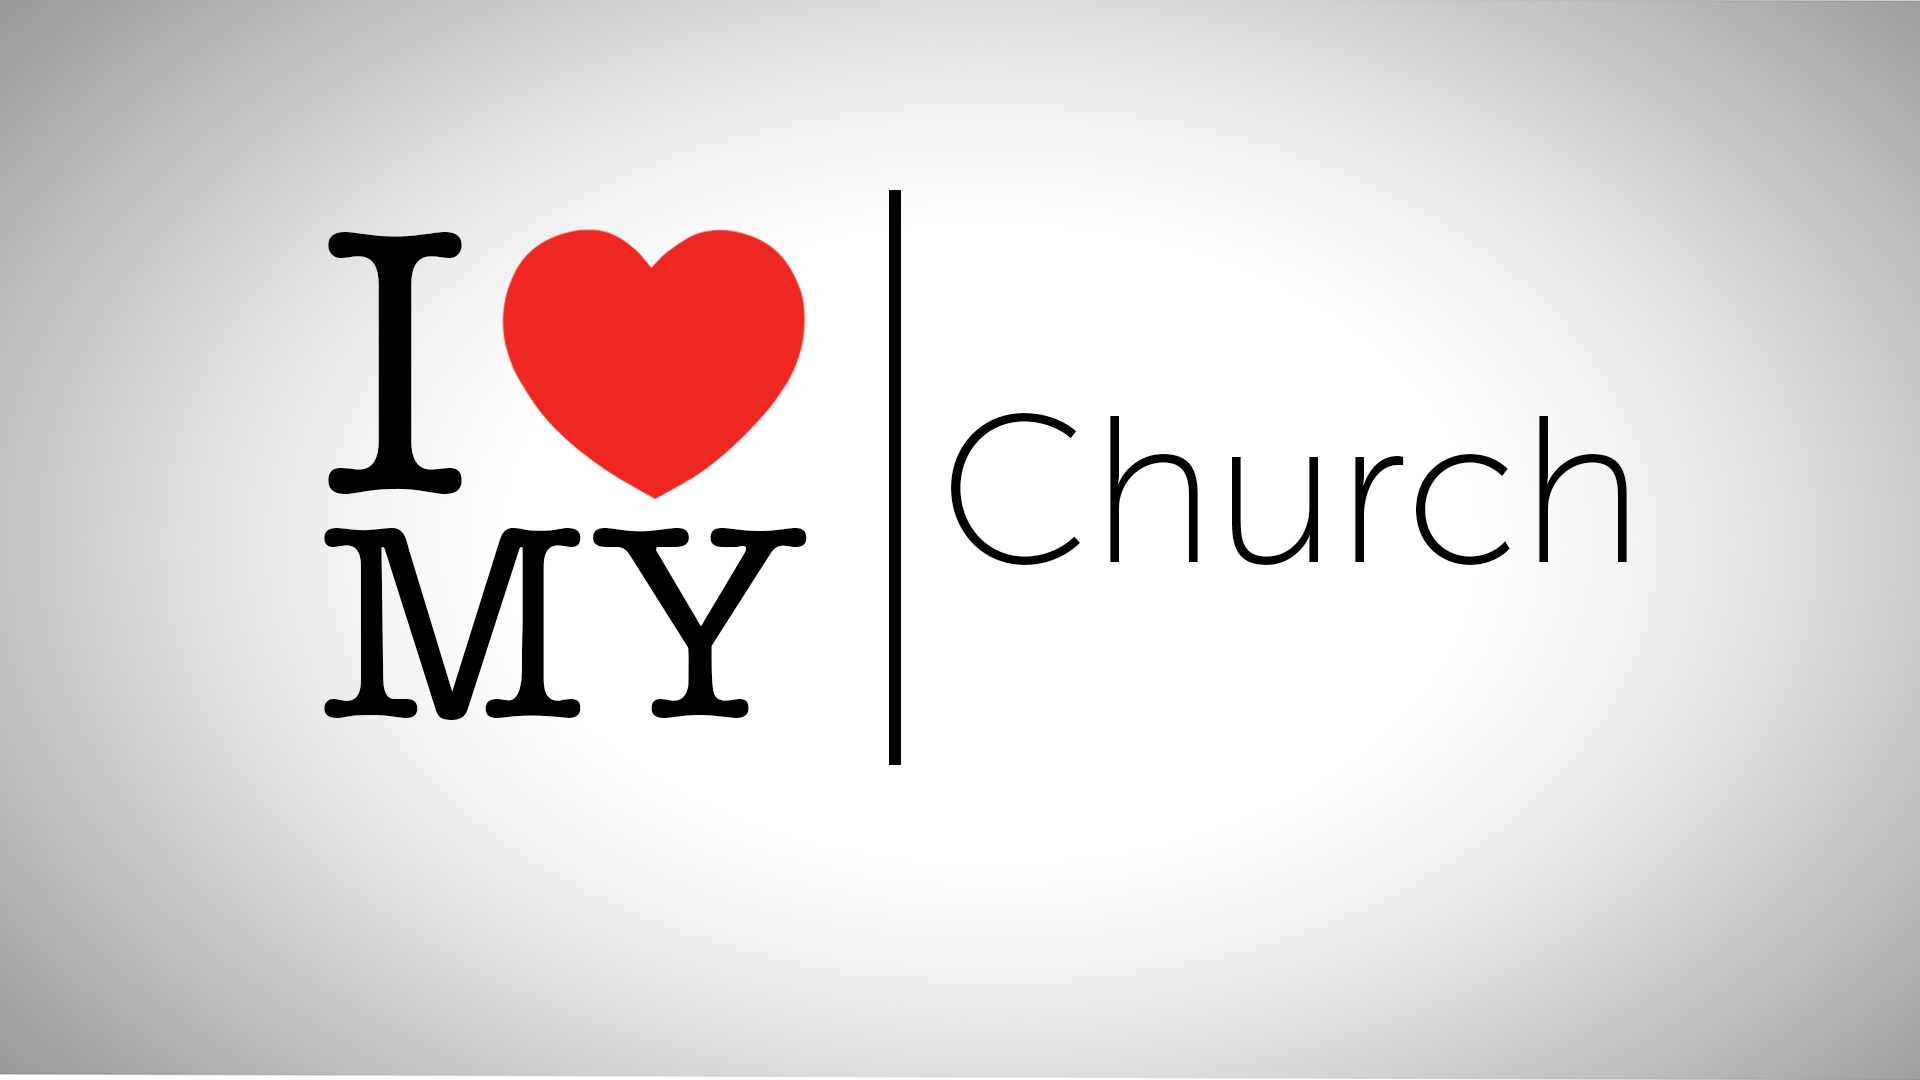 I love my church: I get corrected